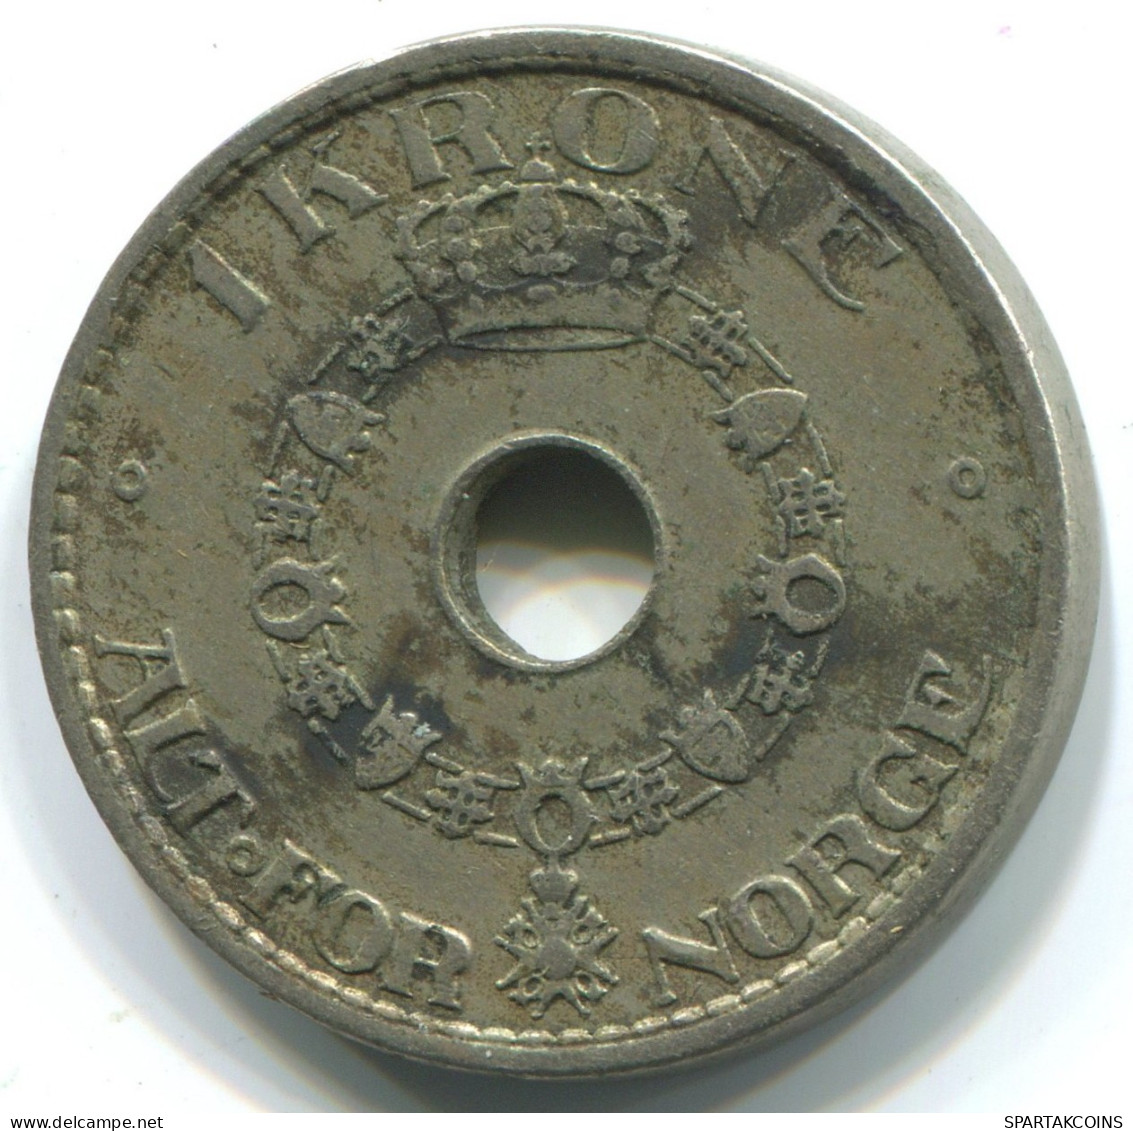 1 KRONE 1925NORUEGA NORWAY Moneda #WW1034.E.A - Noruega